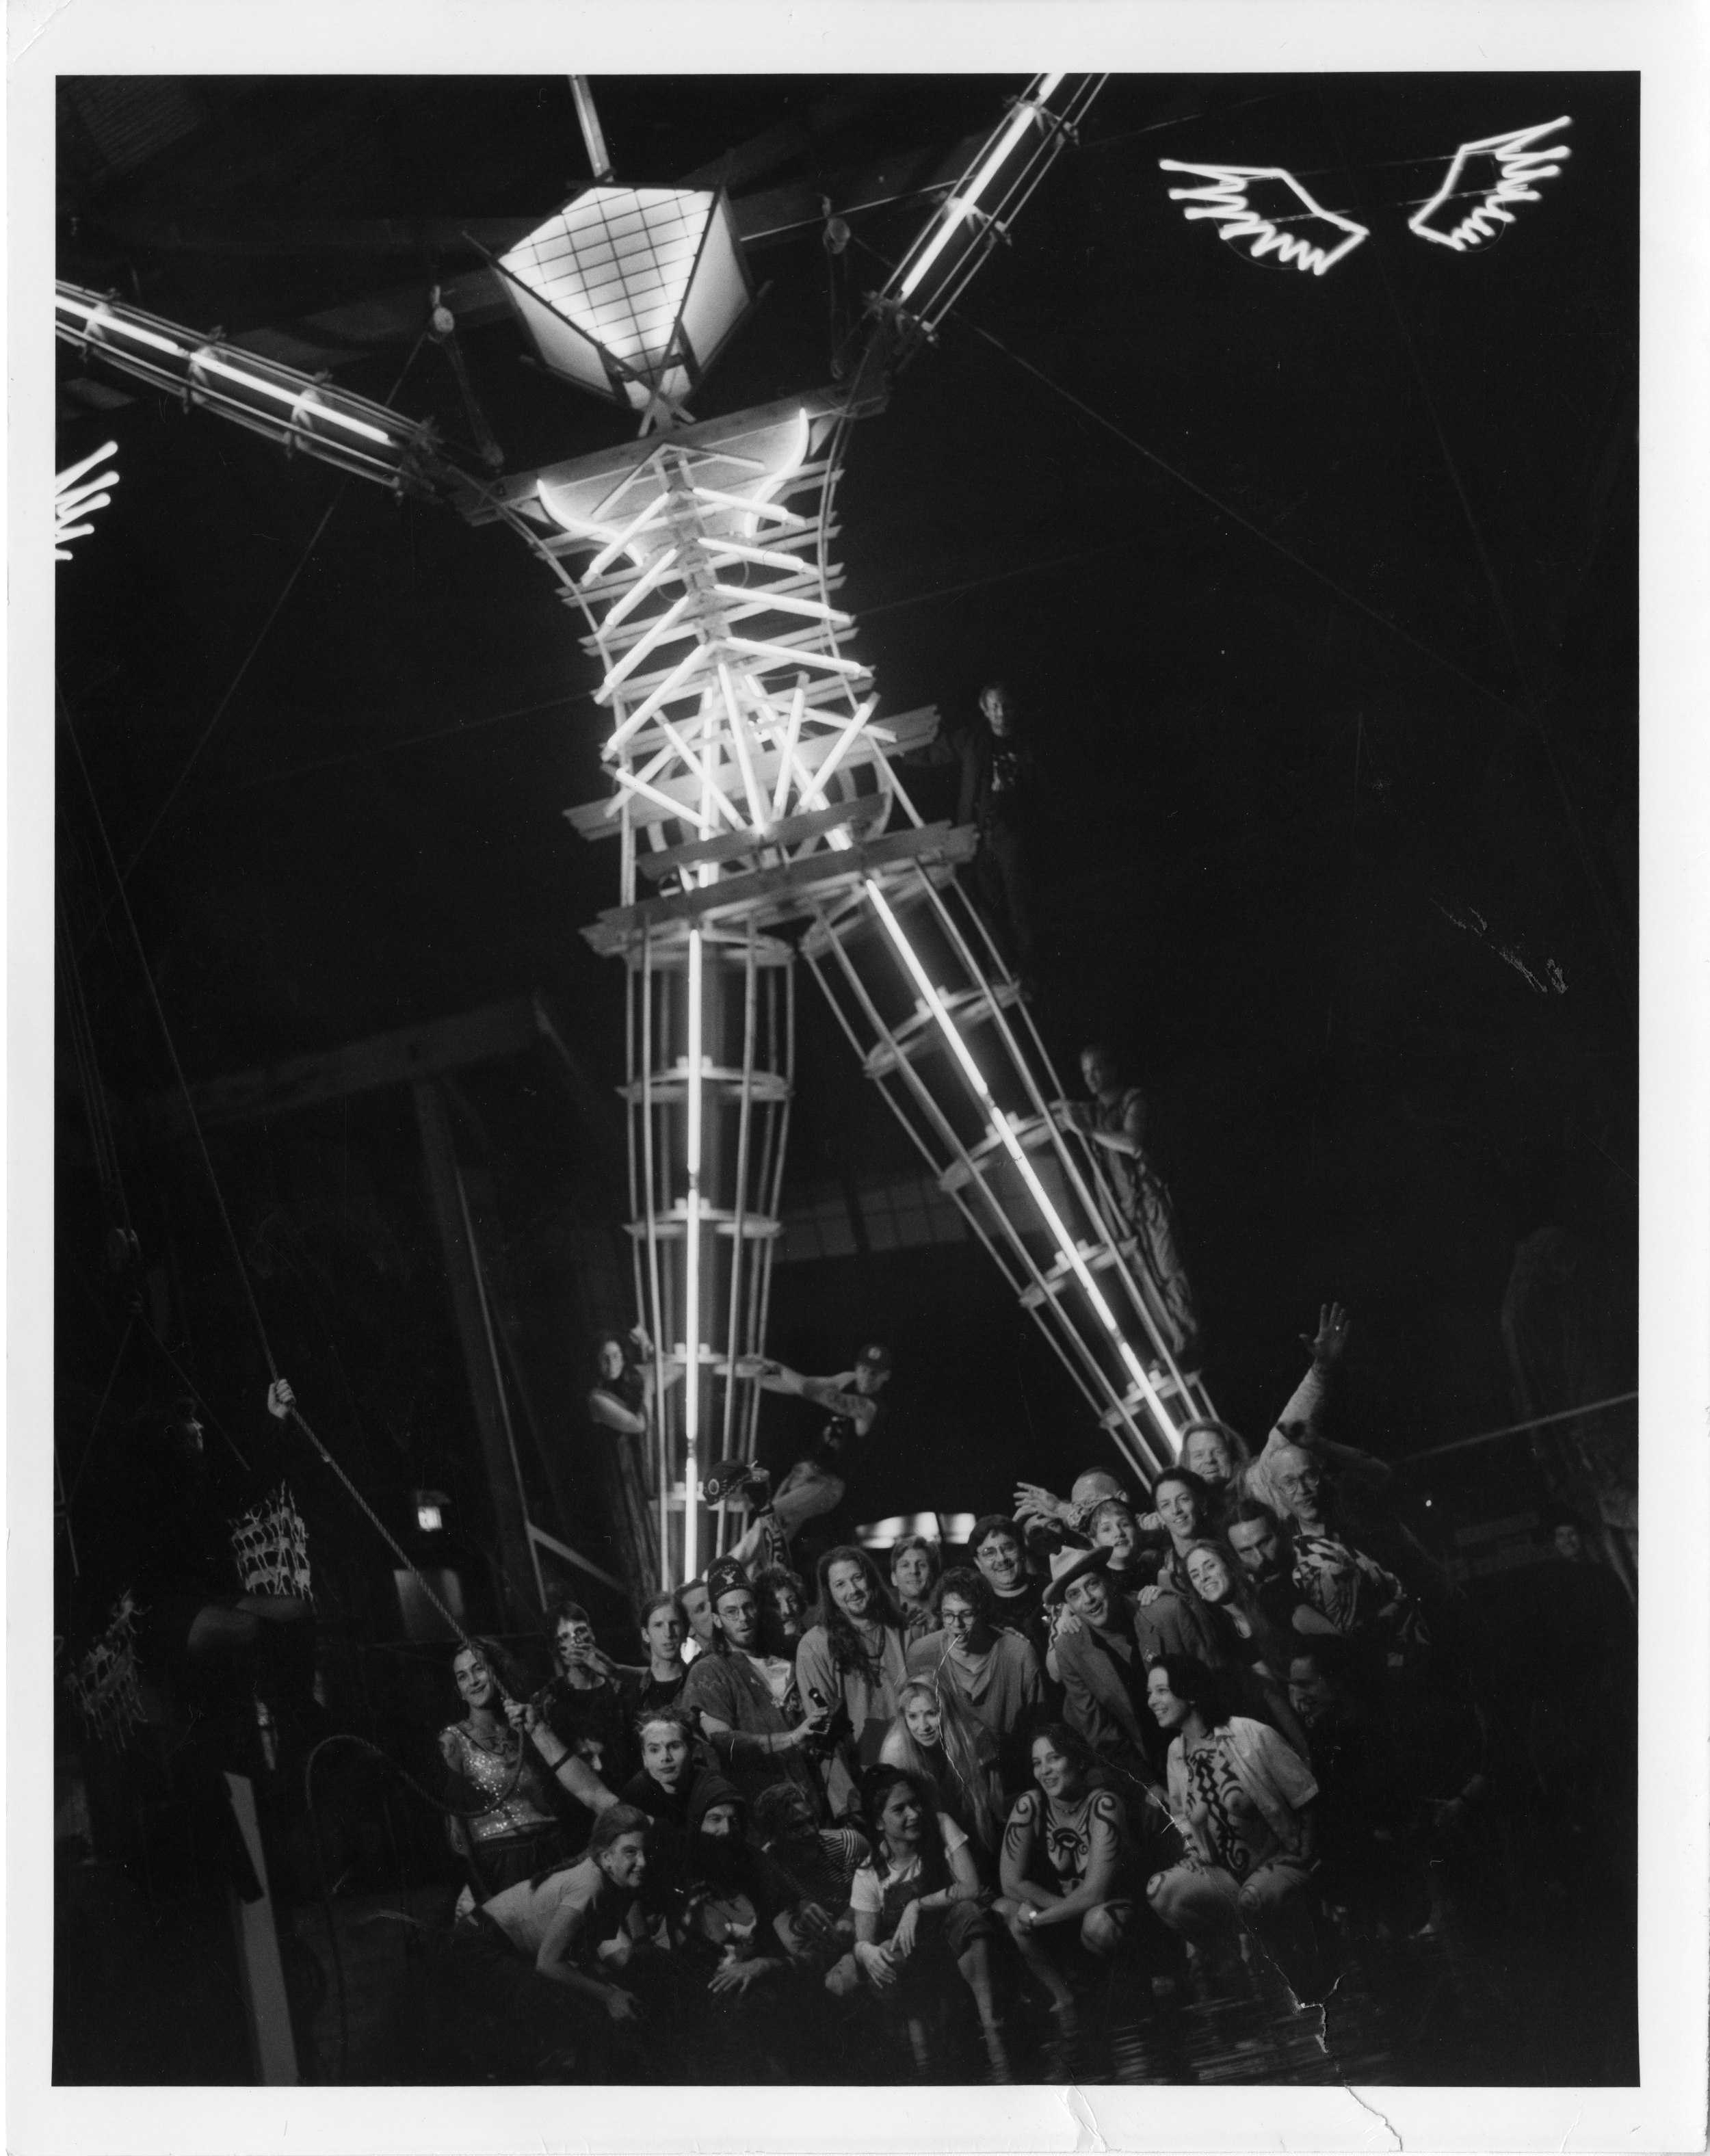 Leo Nash Man Burning Man Image.jpg